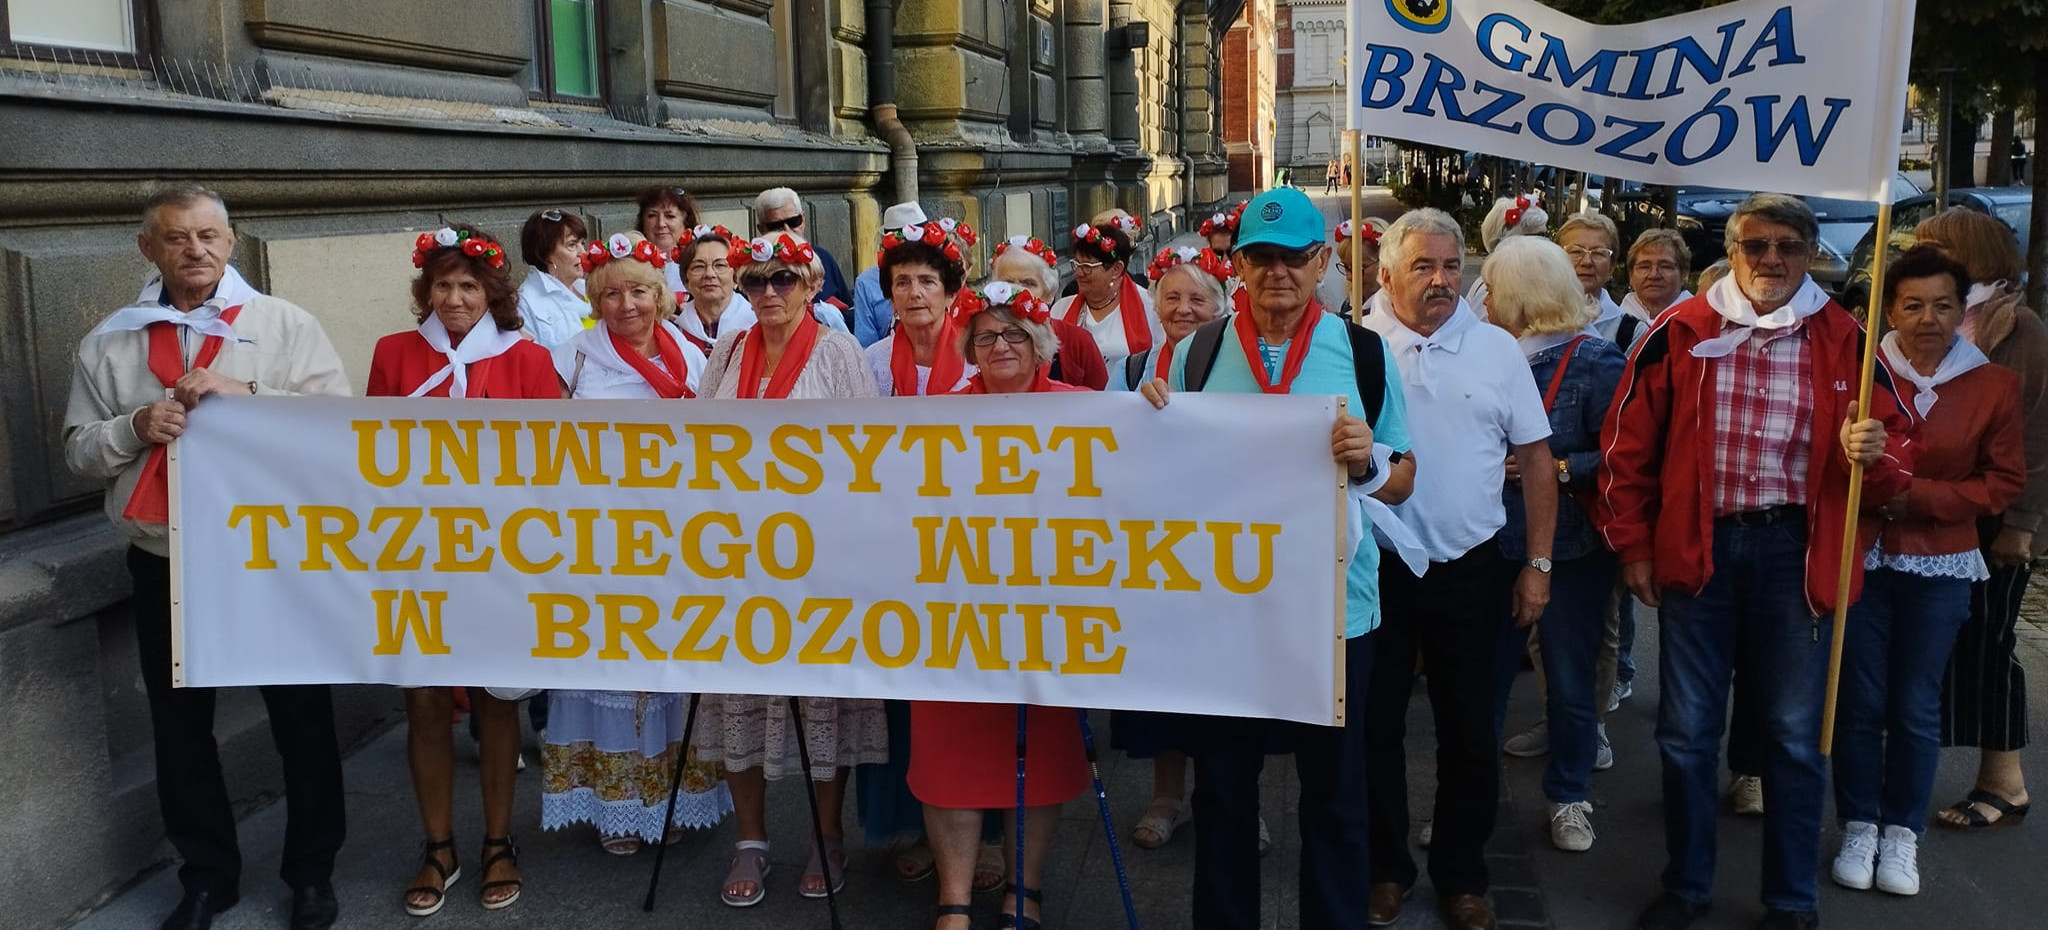 Reprezentacja Gminy Brzozów na X Międzynarodowych Senioraliach w Krakowie (FOTO, VIDEO)